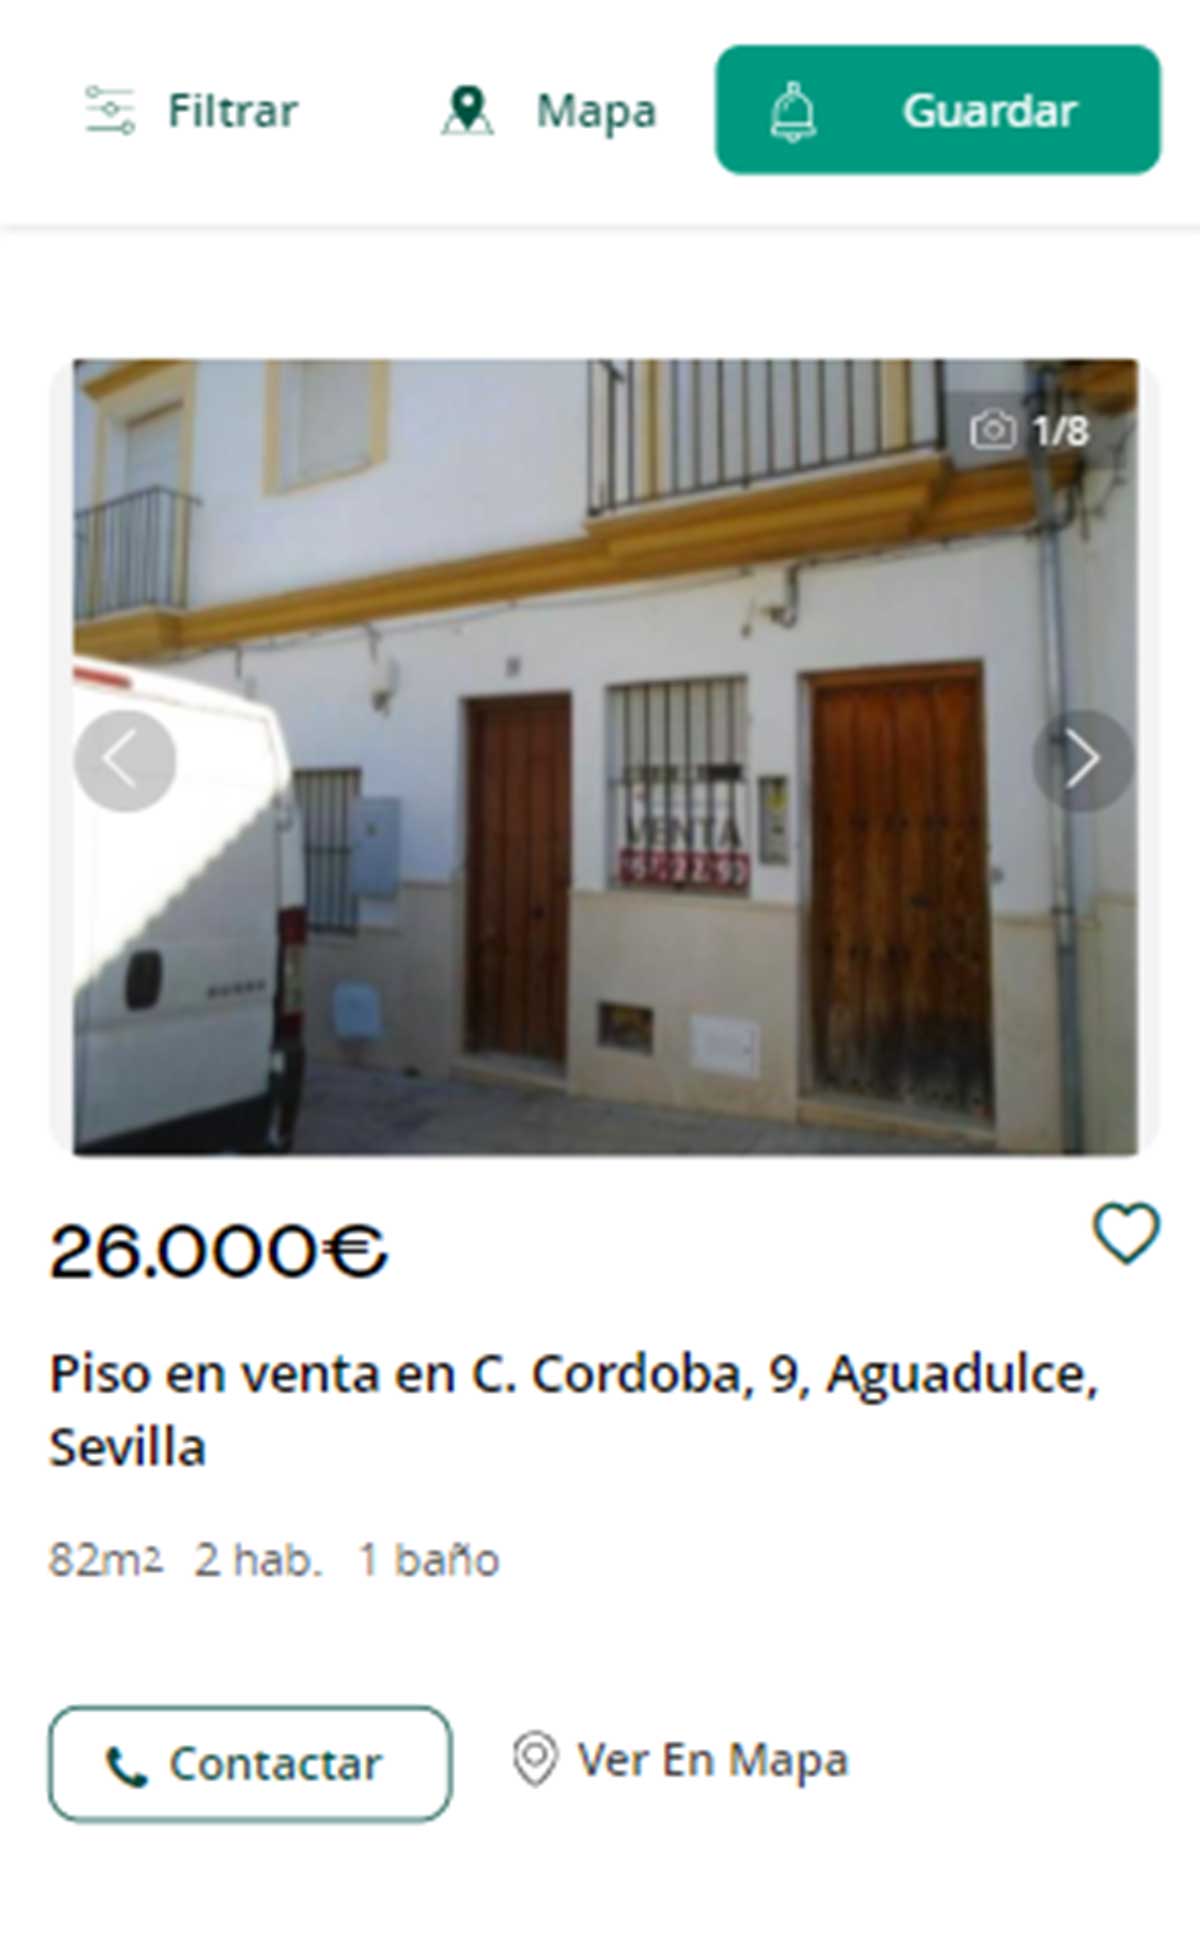 Piso en Sevilla por 26.000 euros